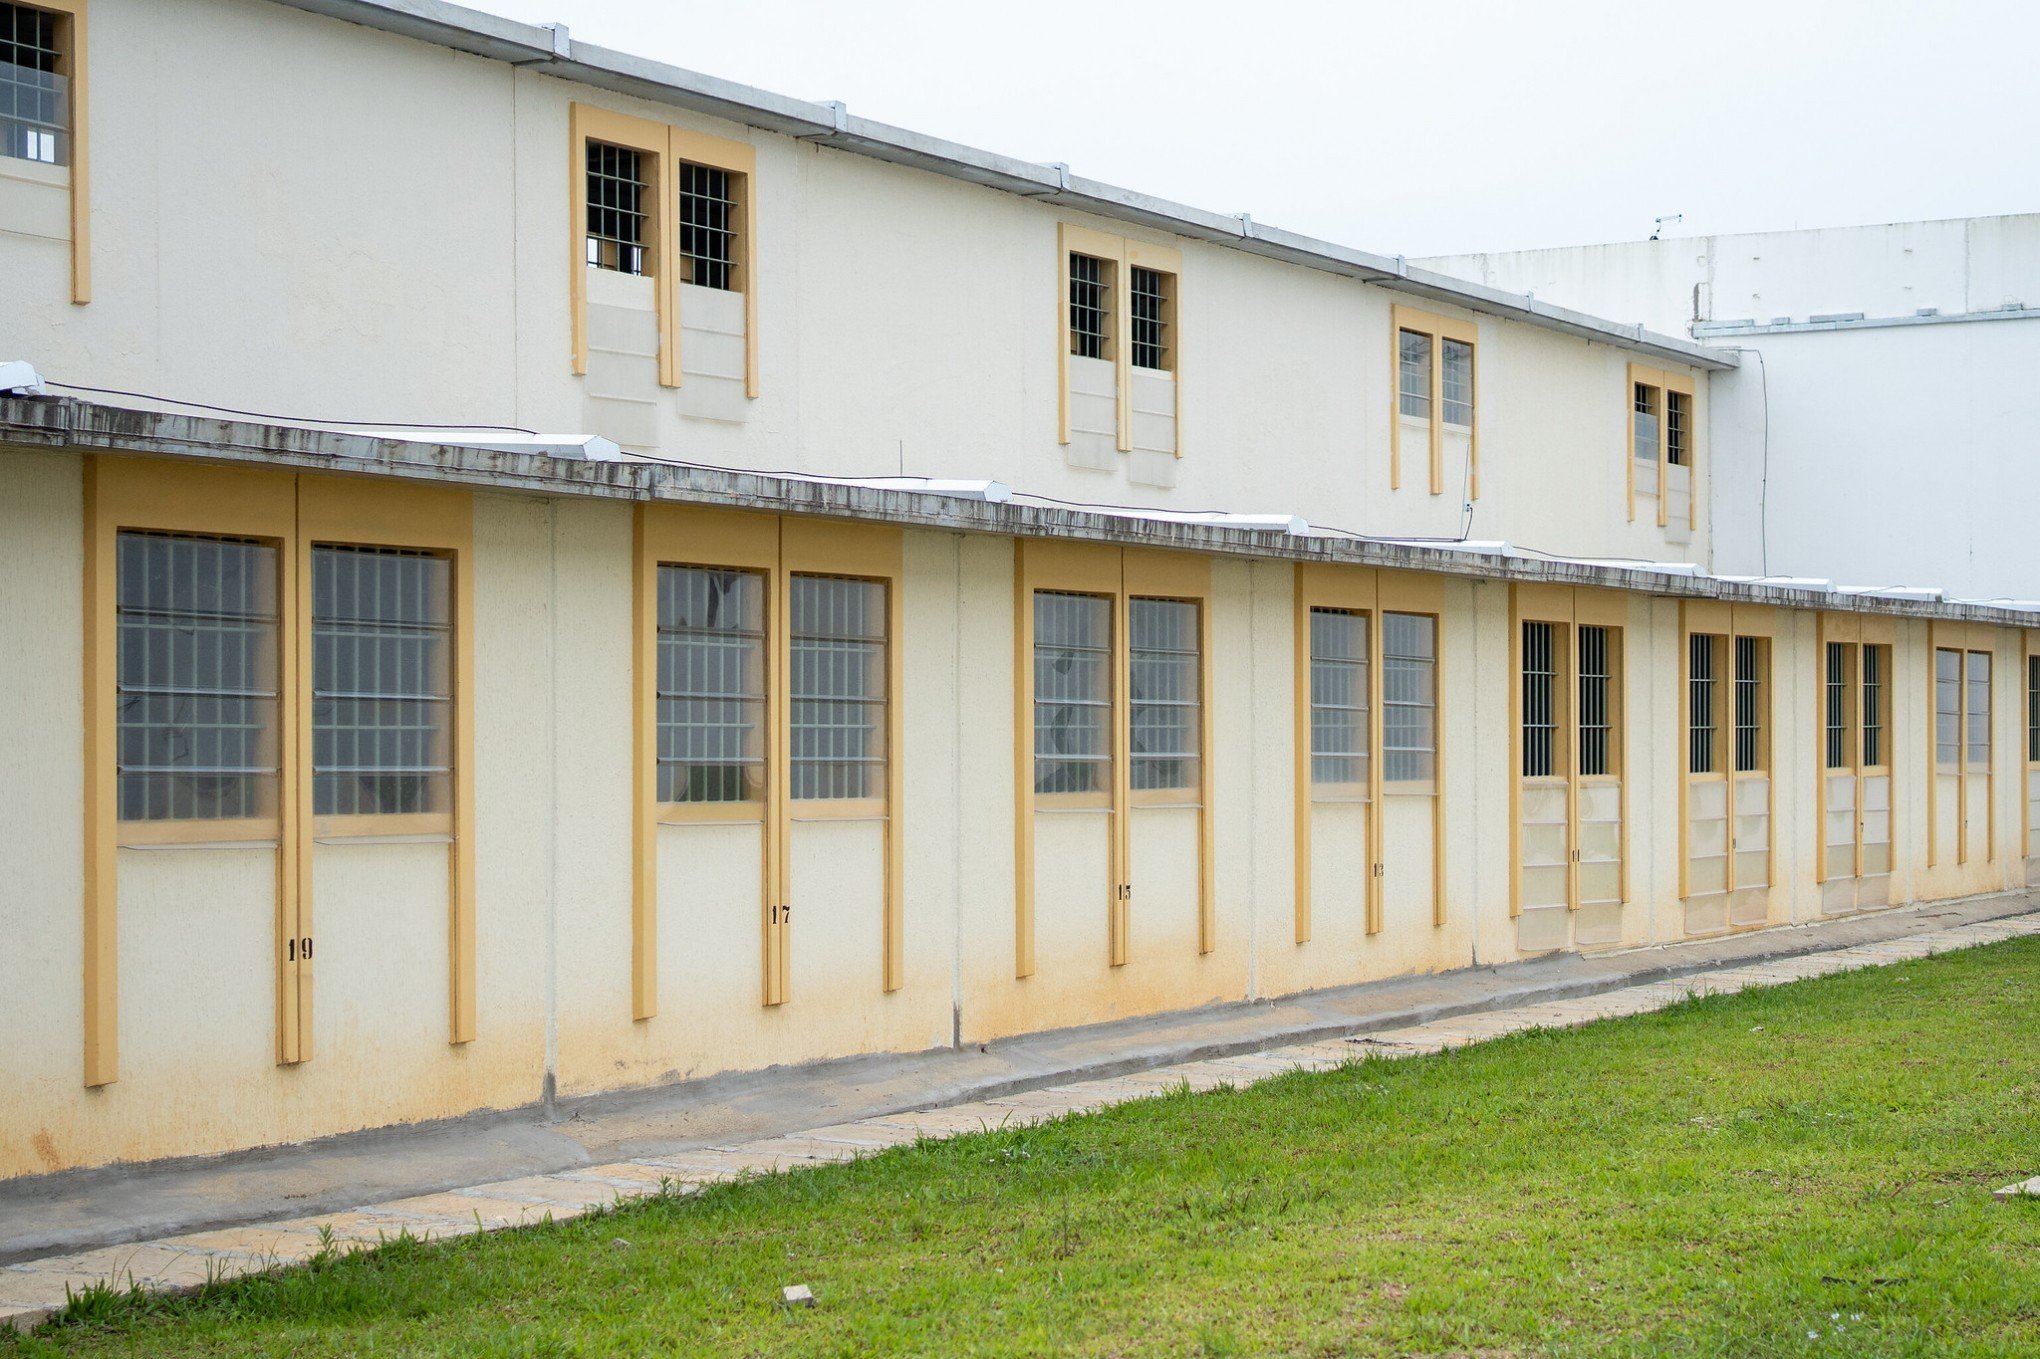 Inaugurada nova penitenciária em Charqueadas com 1,6 mil vagas; veja fotos